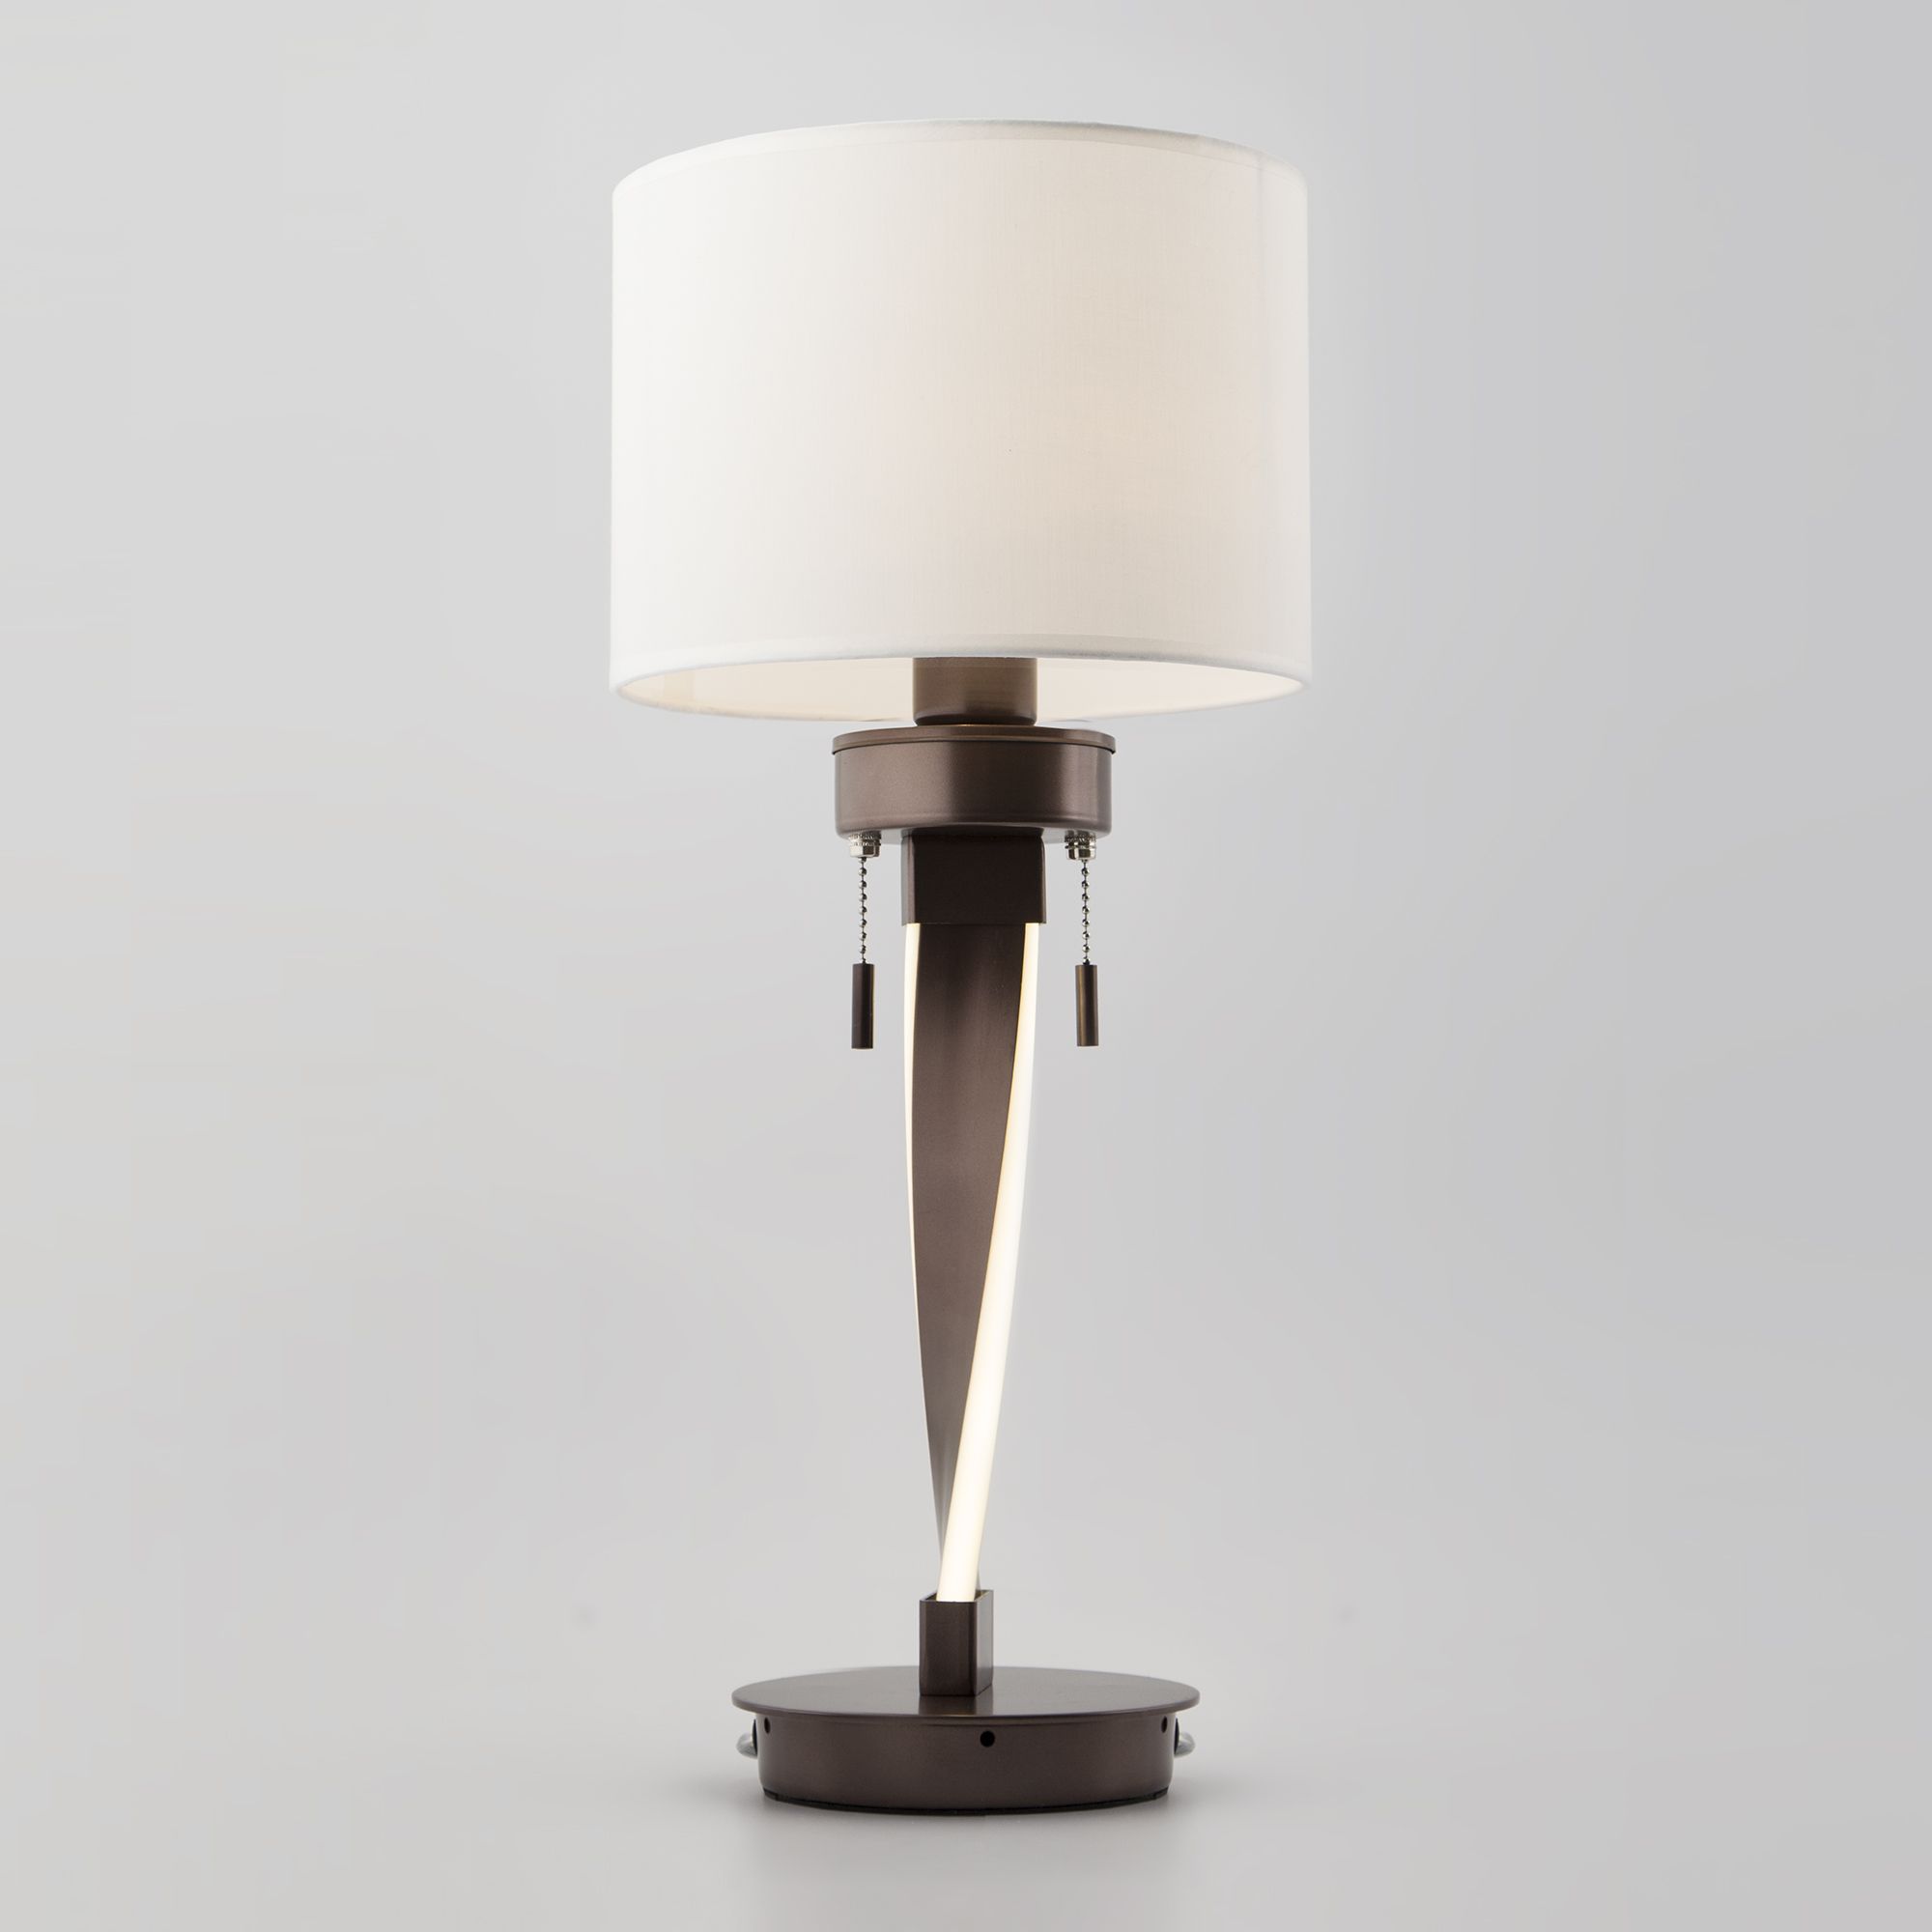 Настольная лампа со светодиодной подсветкой арматуры Bogate's Titan 991 кофе. Фото 1